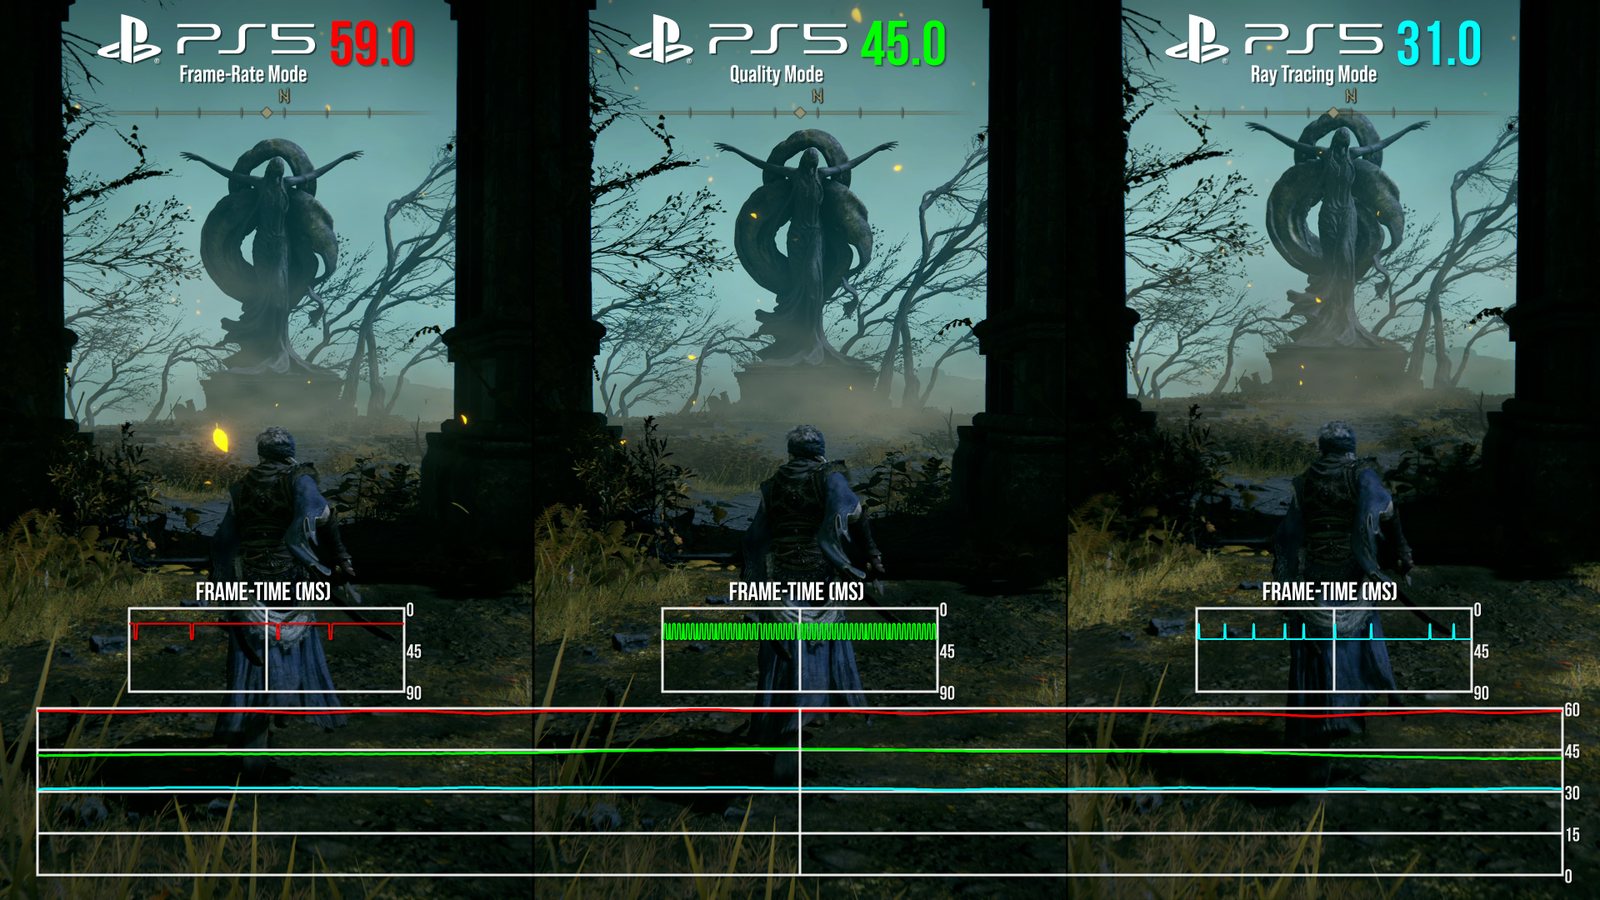 Elden Ring's PS5 Ray Tracing Mode Drops Below 30 FPS